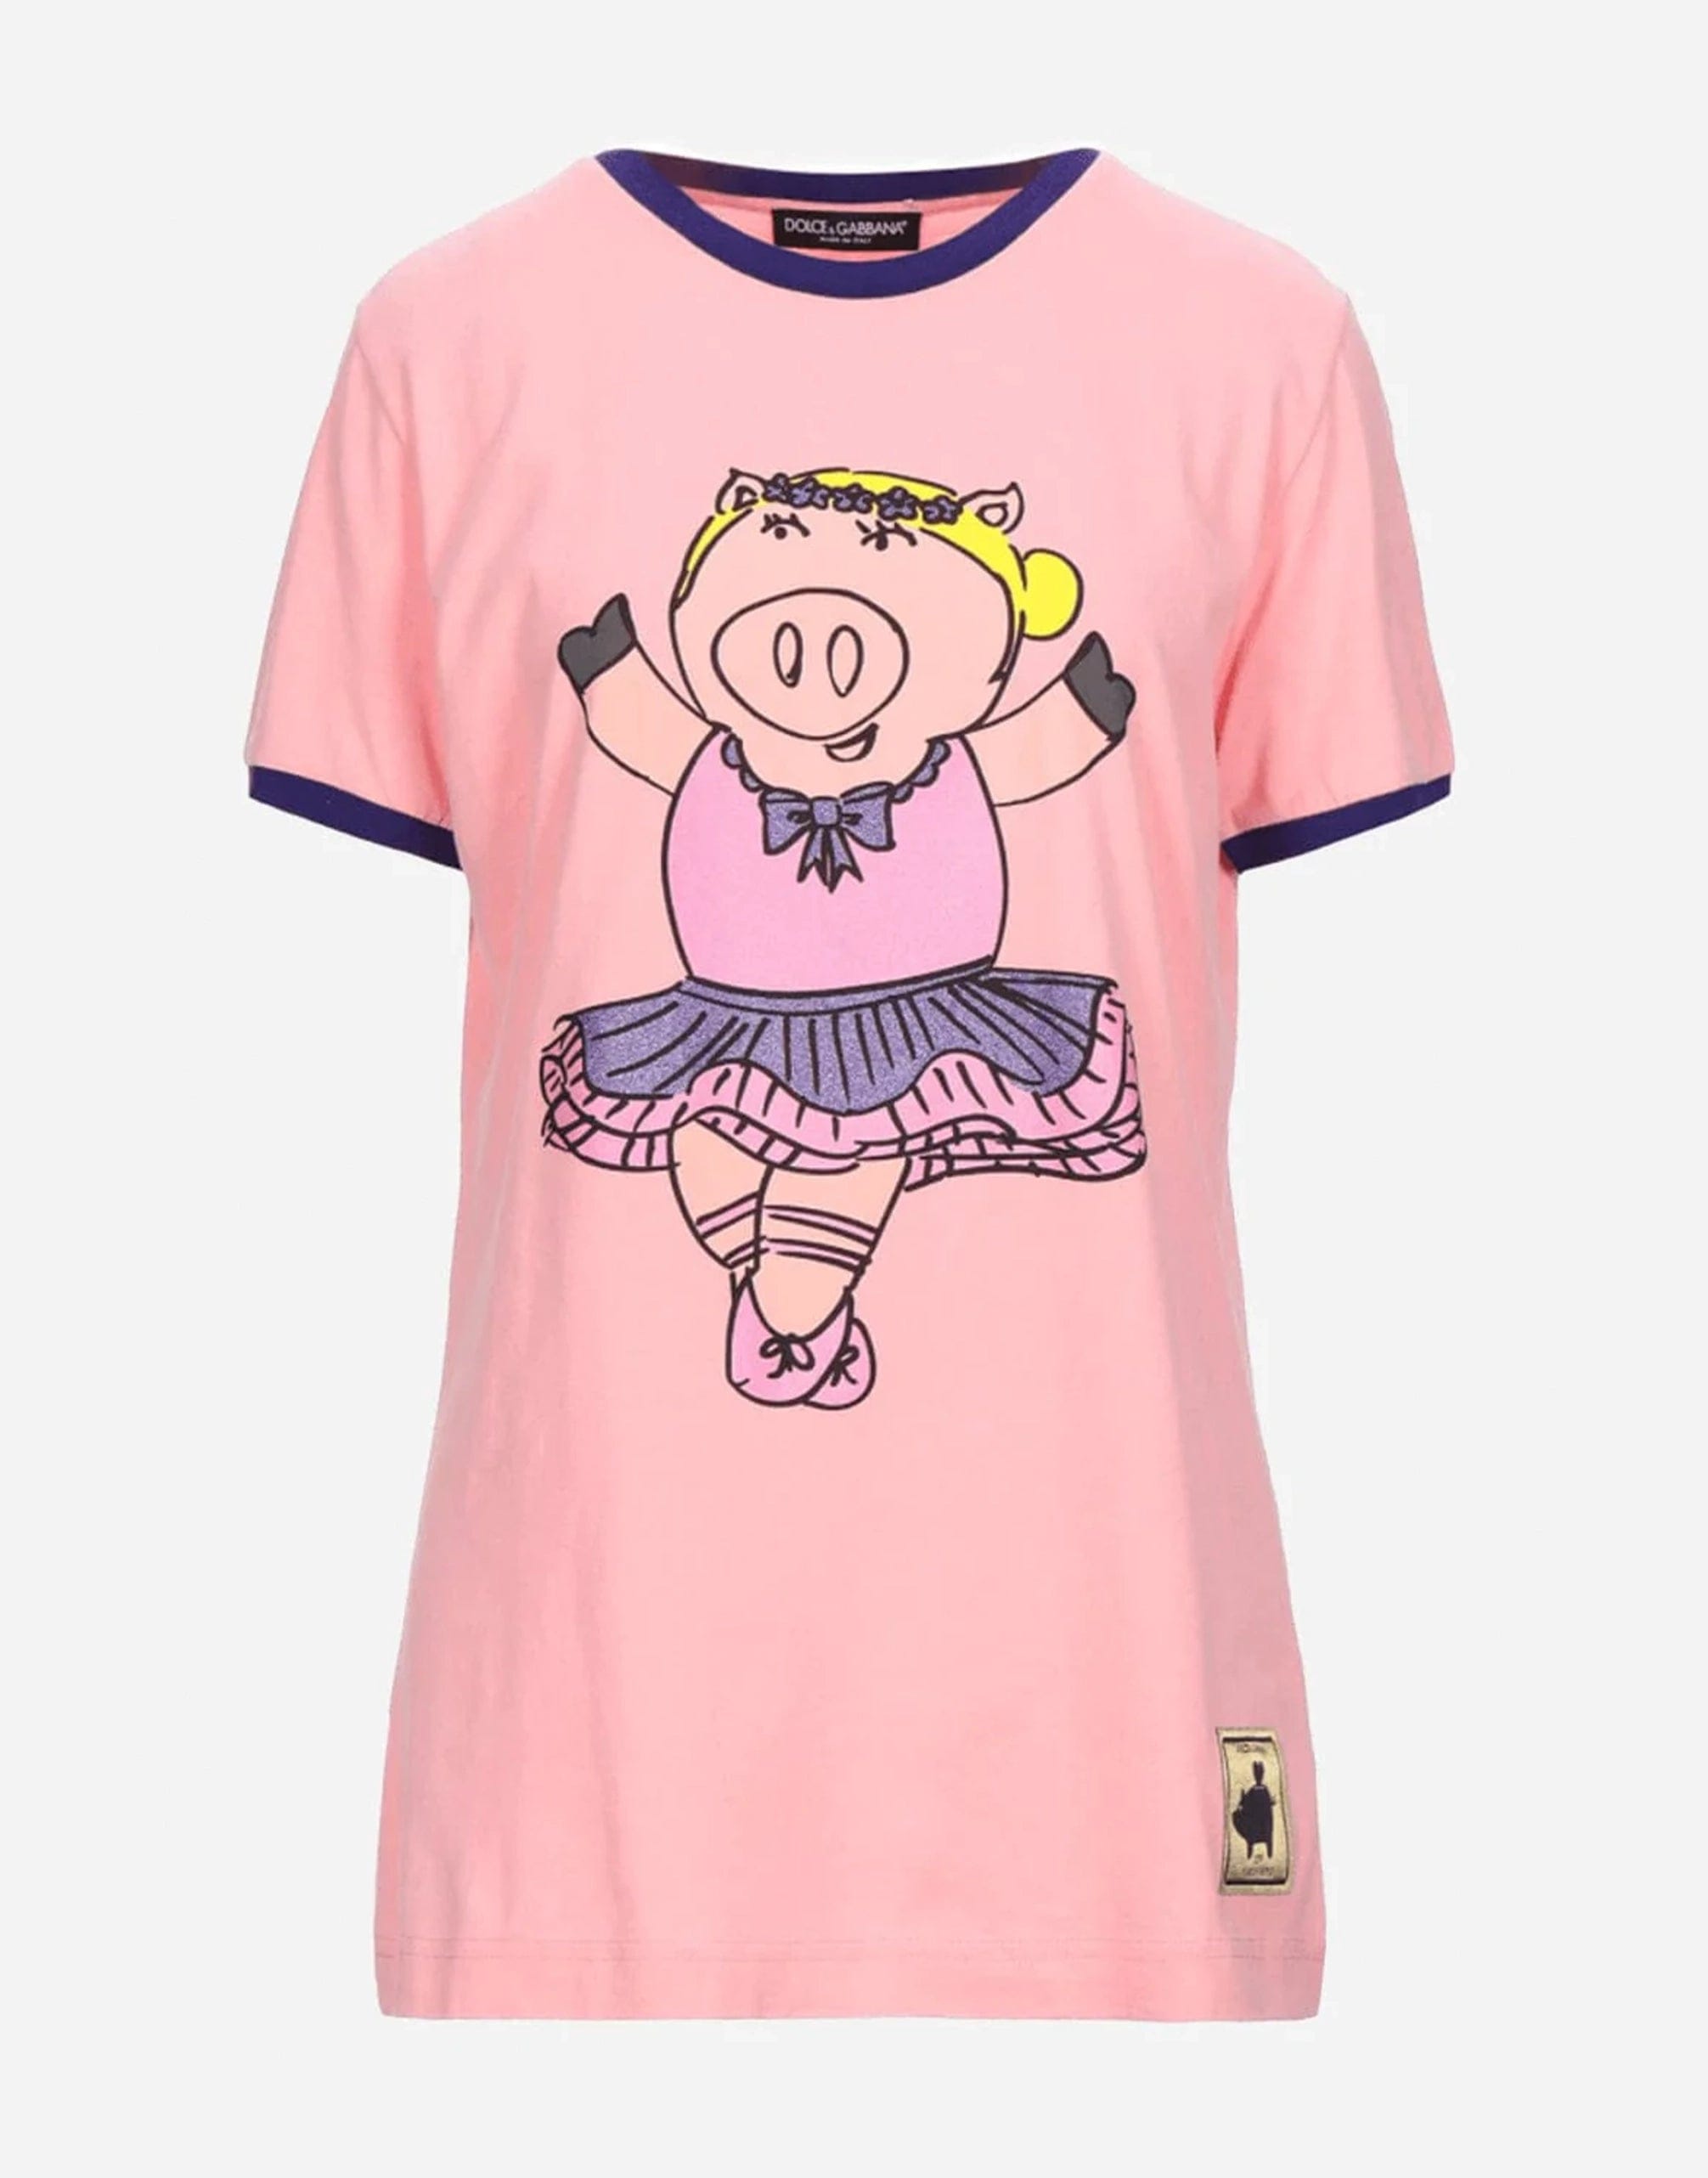 Dolce & Gabbana Ballerina Pig-Print T-Shirt